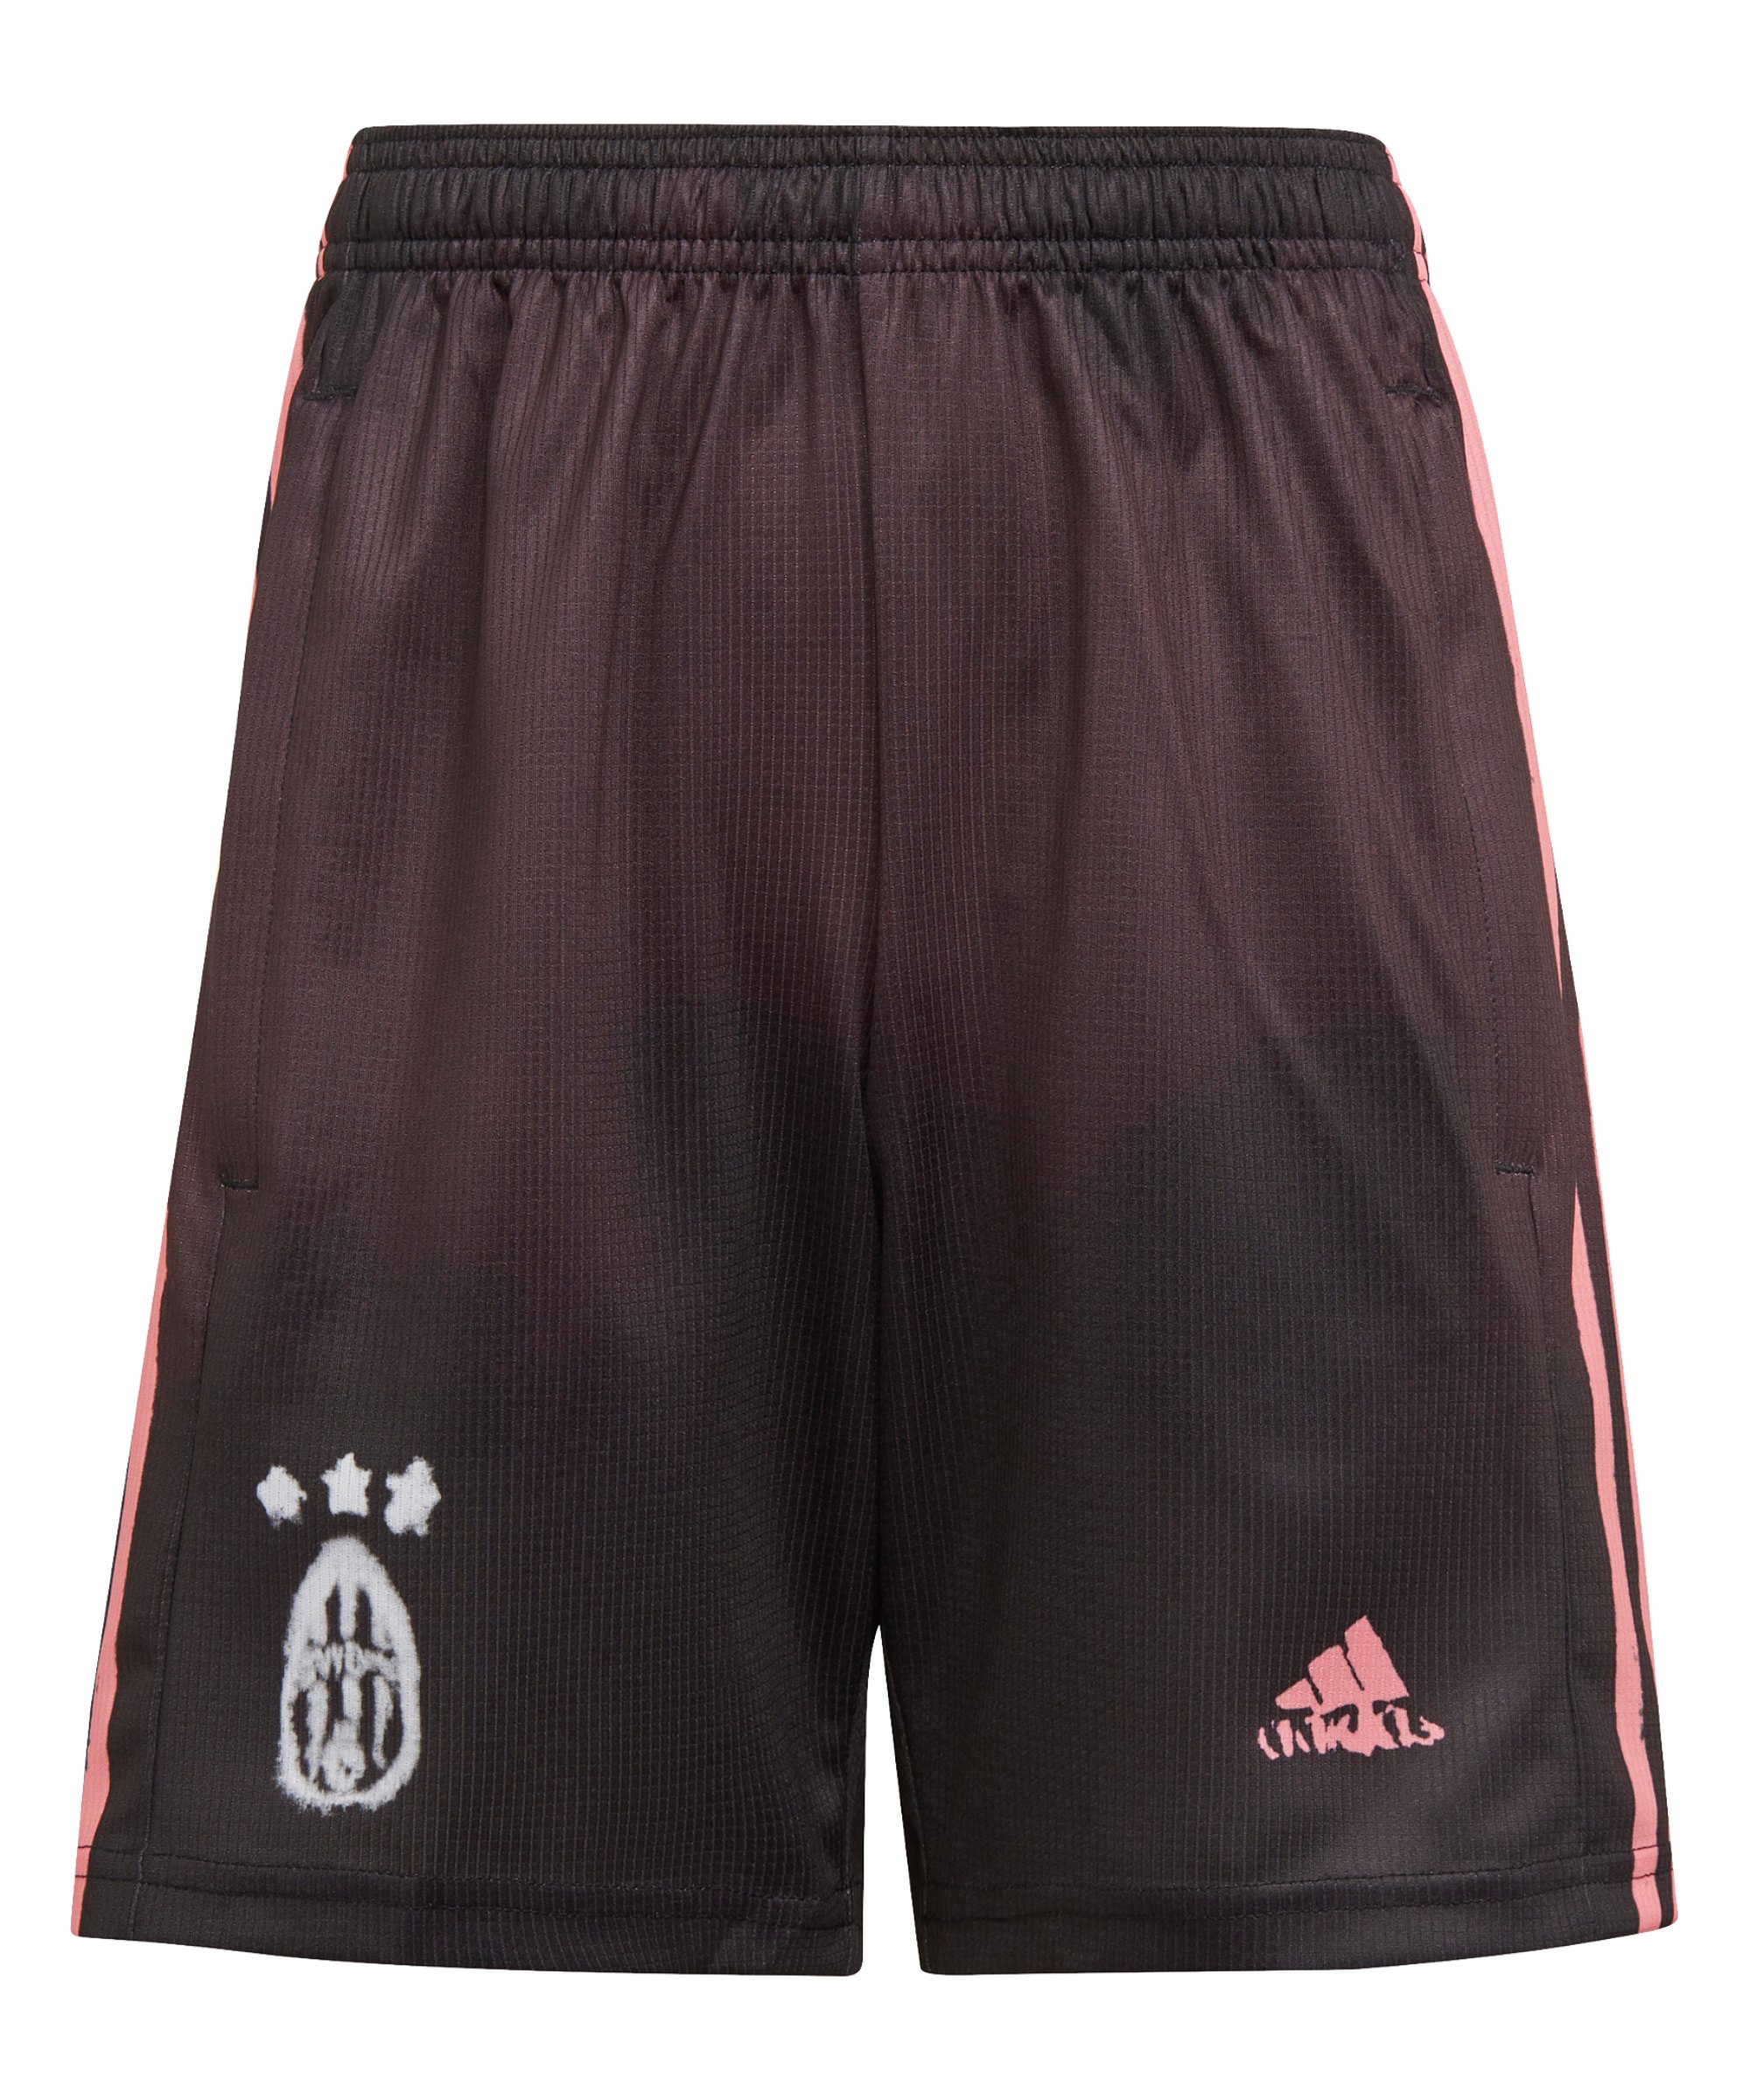 adidas Juventus Turin HR Short Kids Schwarz - schwarz